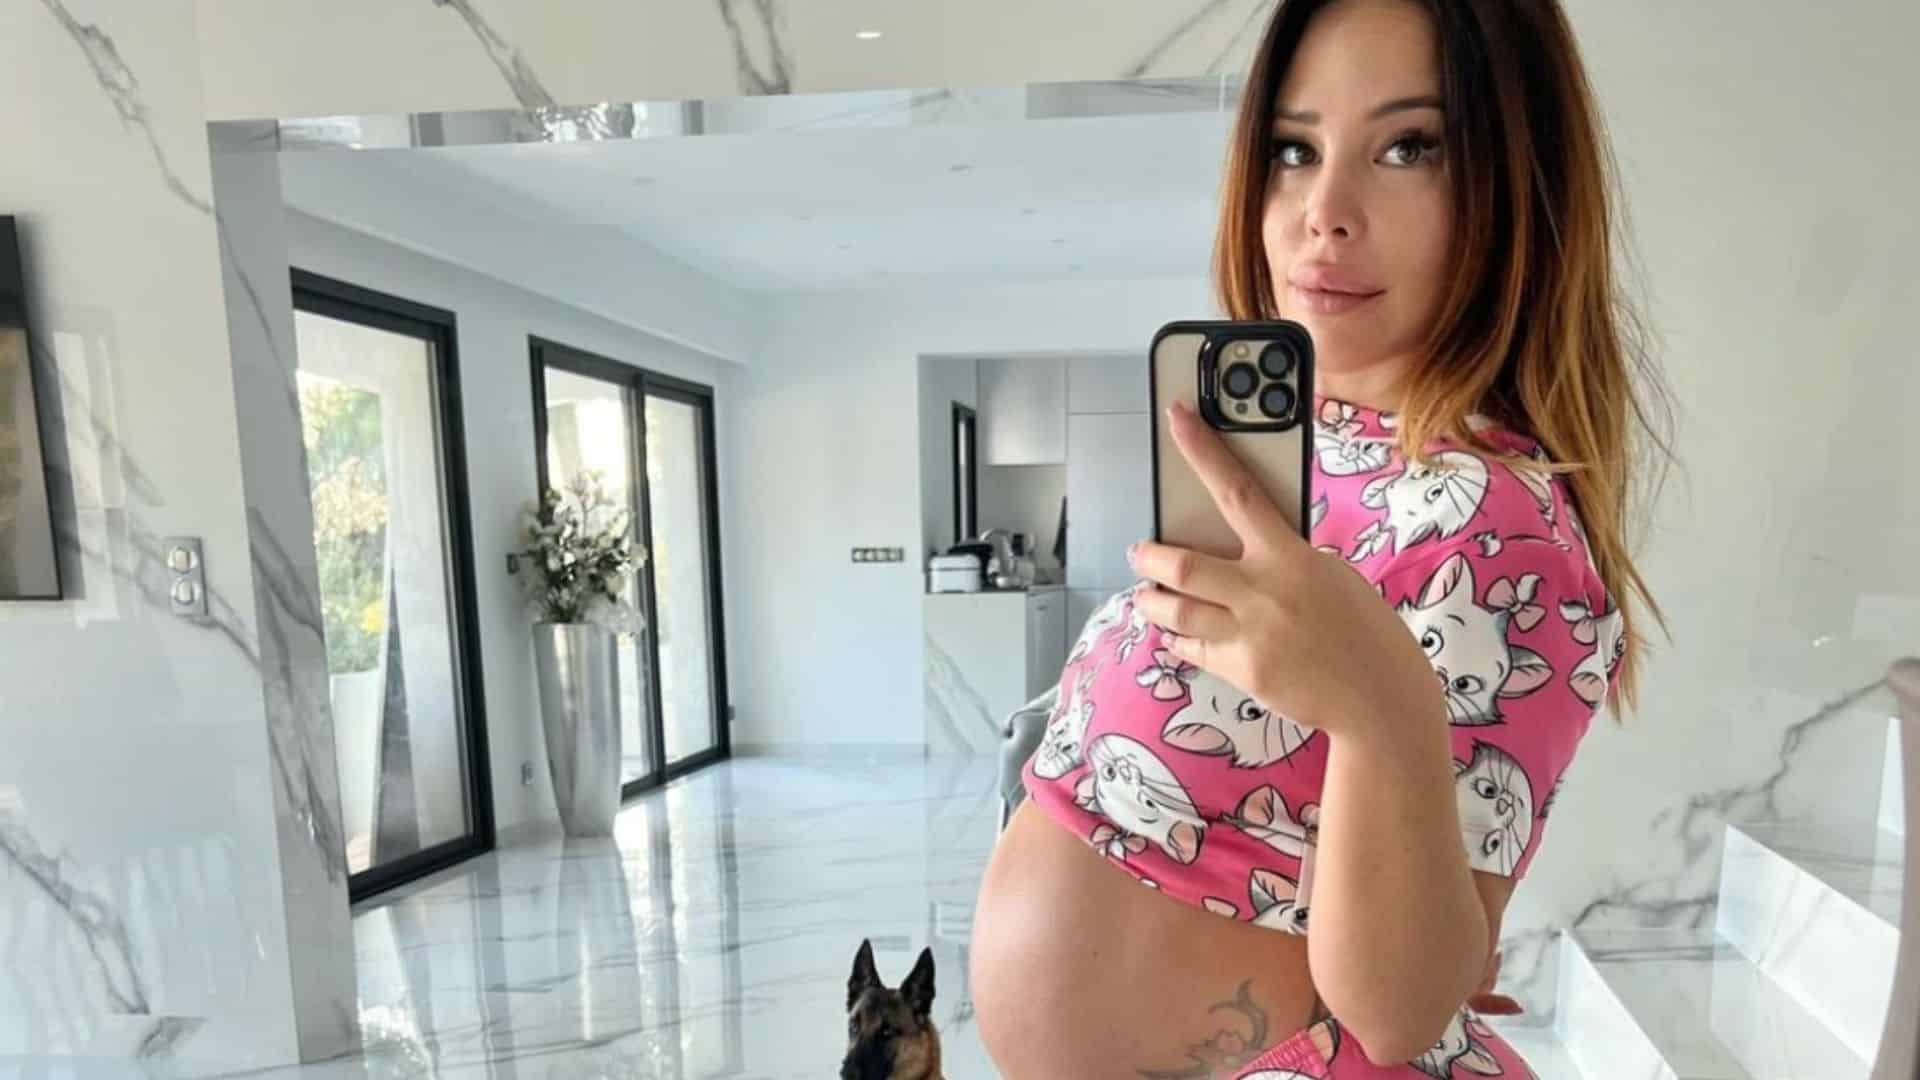 Kim Glow : enceinte de son premier enfant, elle annonce le prénom de sa fille avant l'accouchement